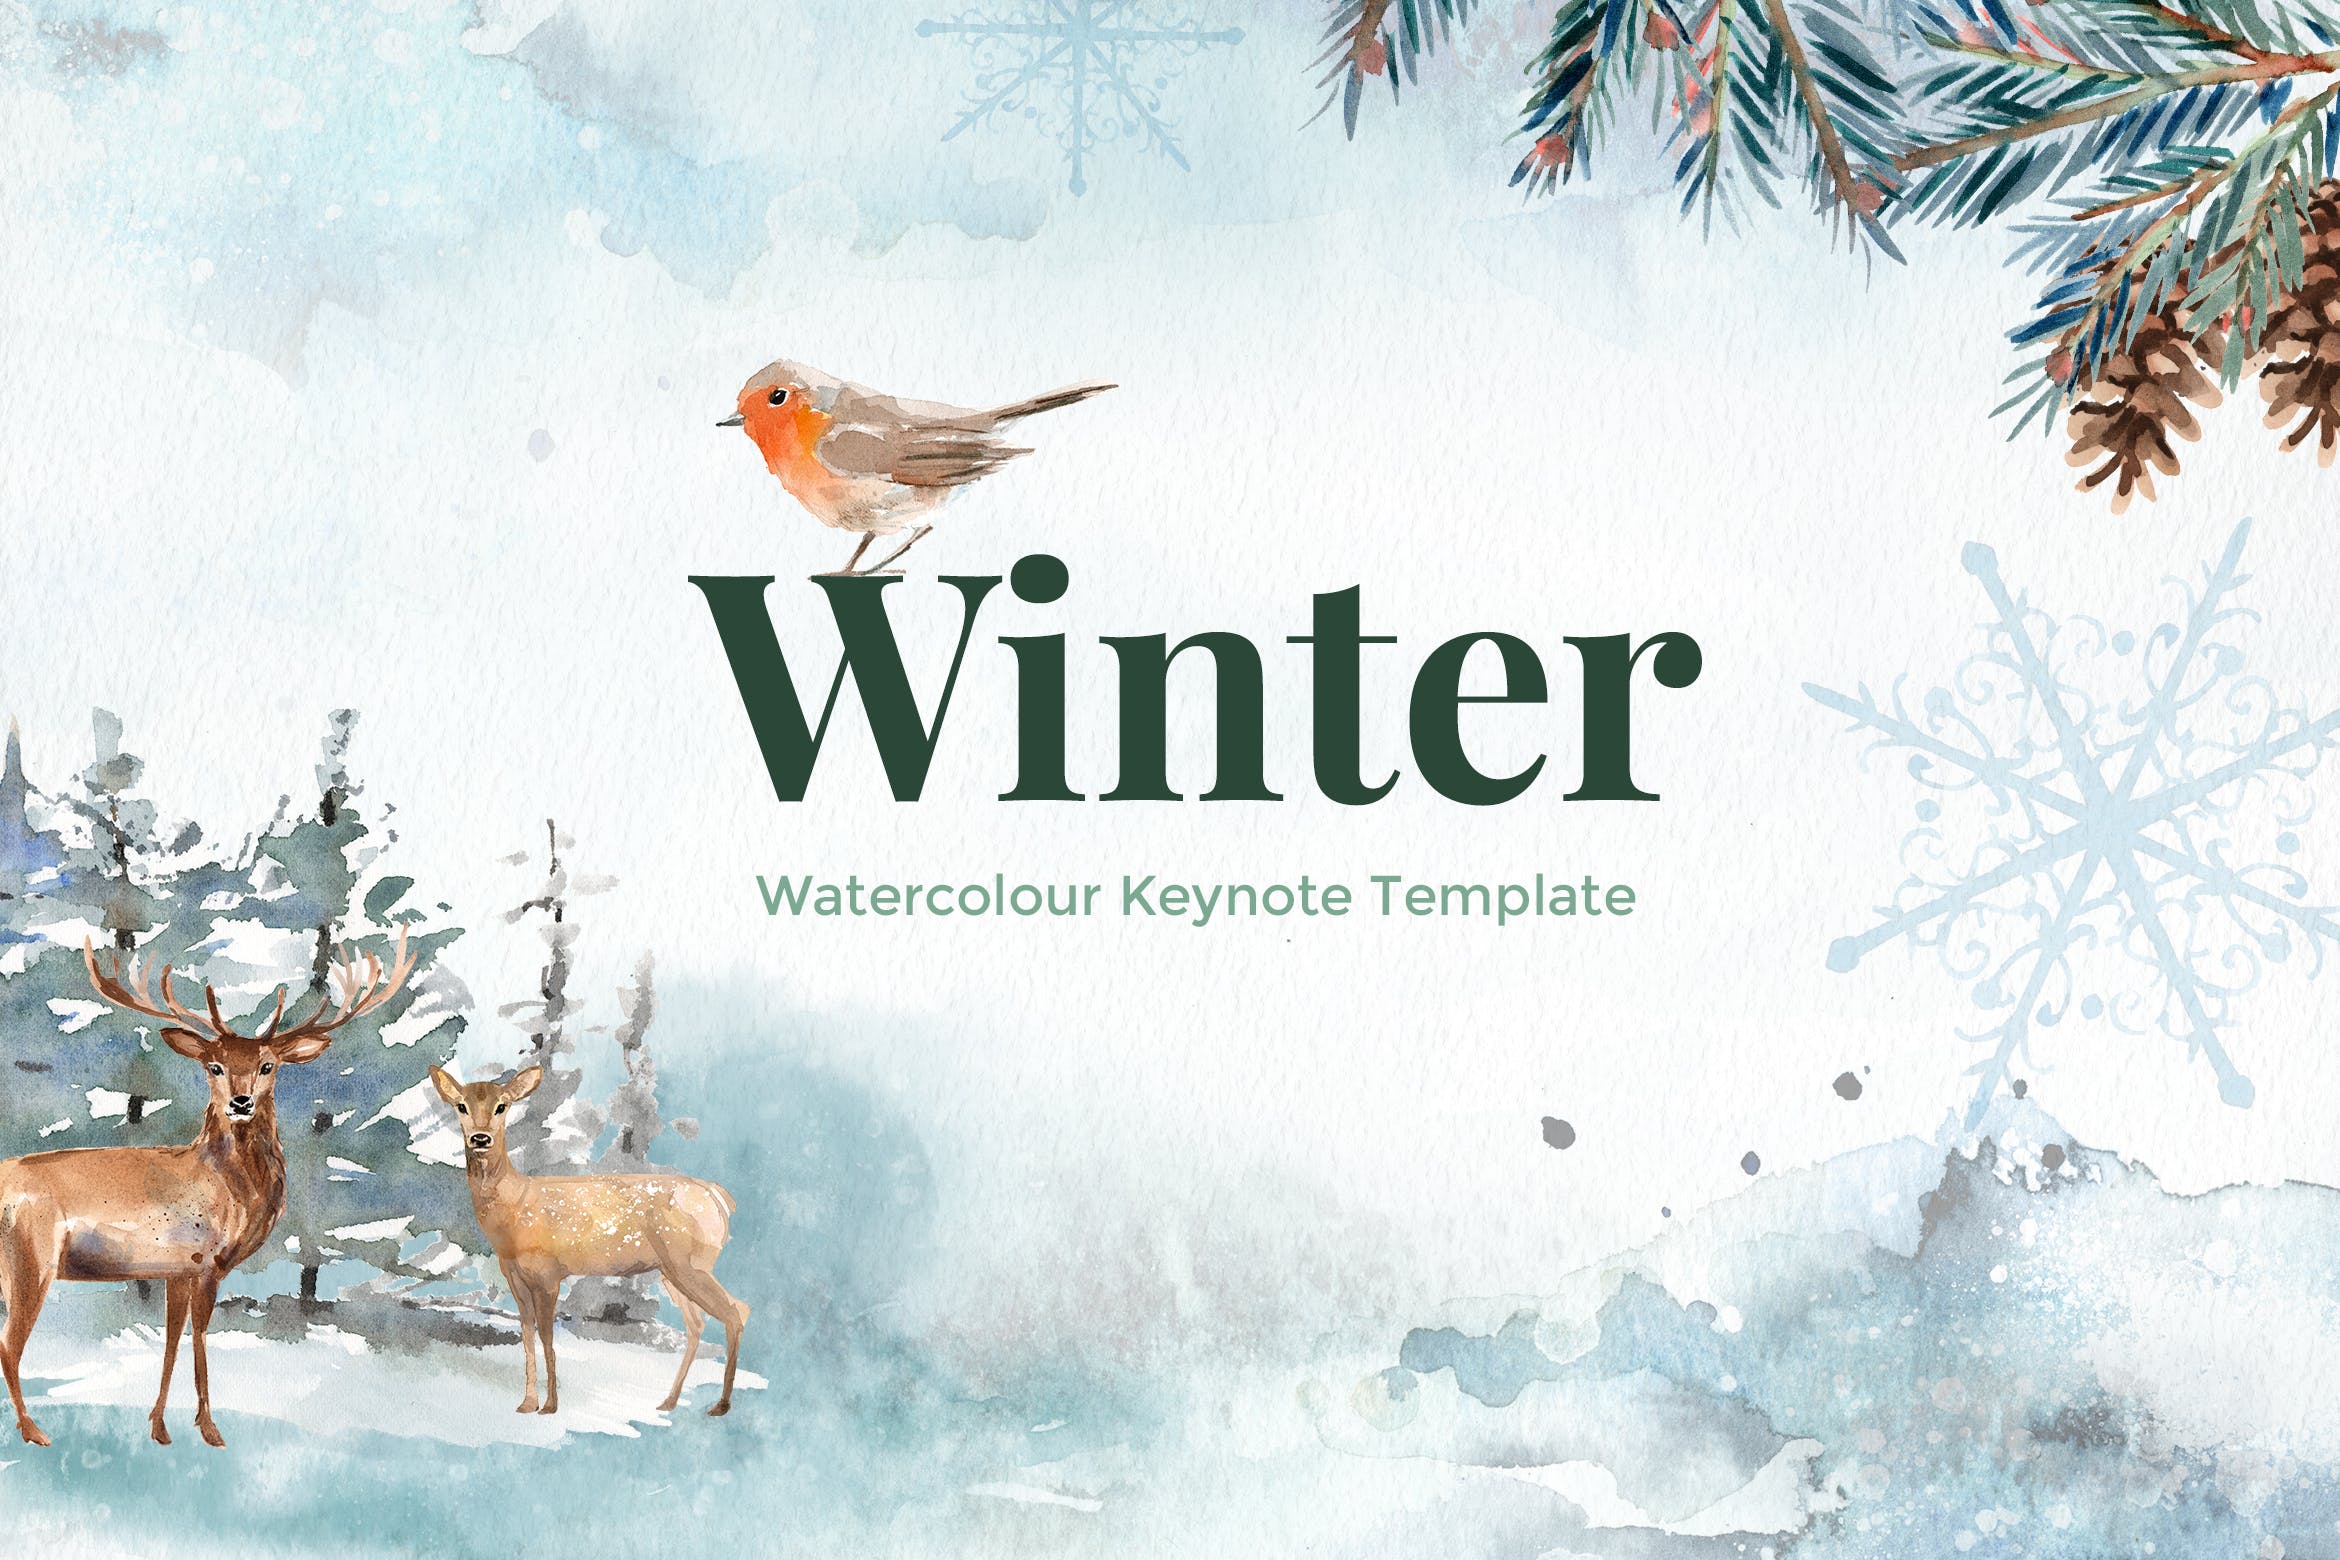 冬天主题水彩手绘元素素材库精选Keynote模板 Winter – Watercolour Keynote Template插图